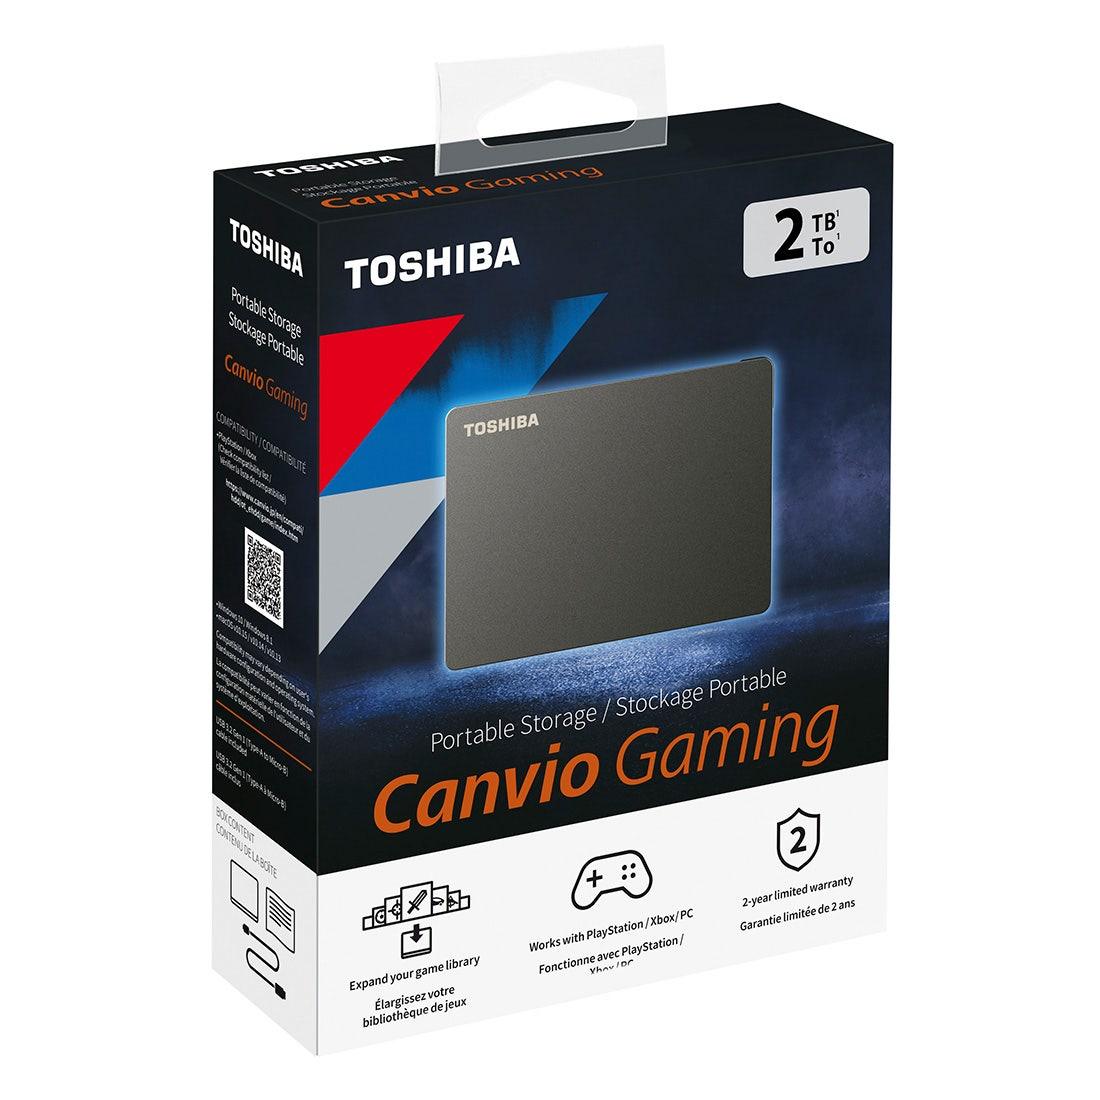 HD Externo Toshiba 2TB Canvio Gaming Preto HDTX120XK3AA I - Mega Market